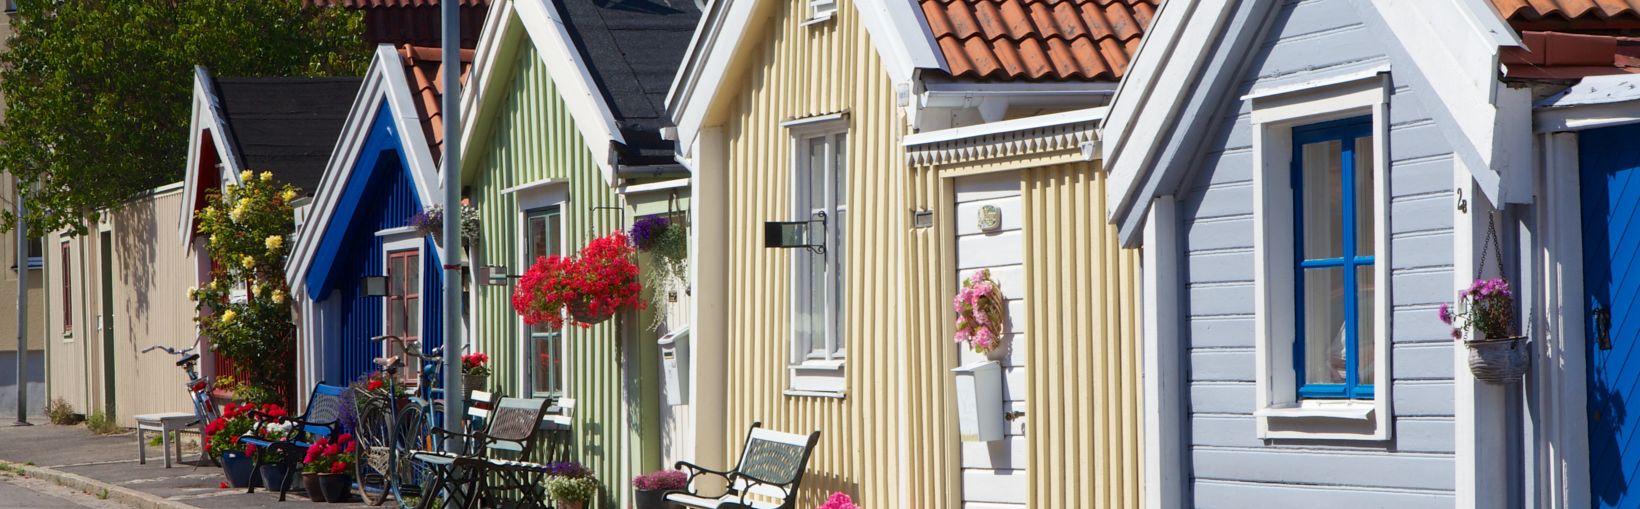 Krāsainas vienstāva koka ēkas Karlskrūnā, Zviedrijā